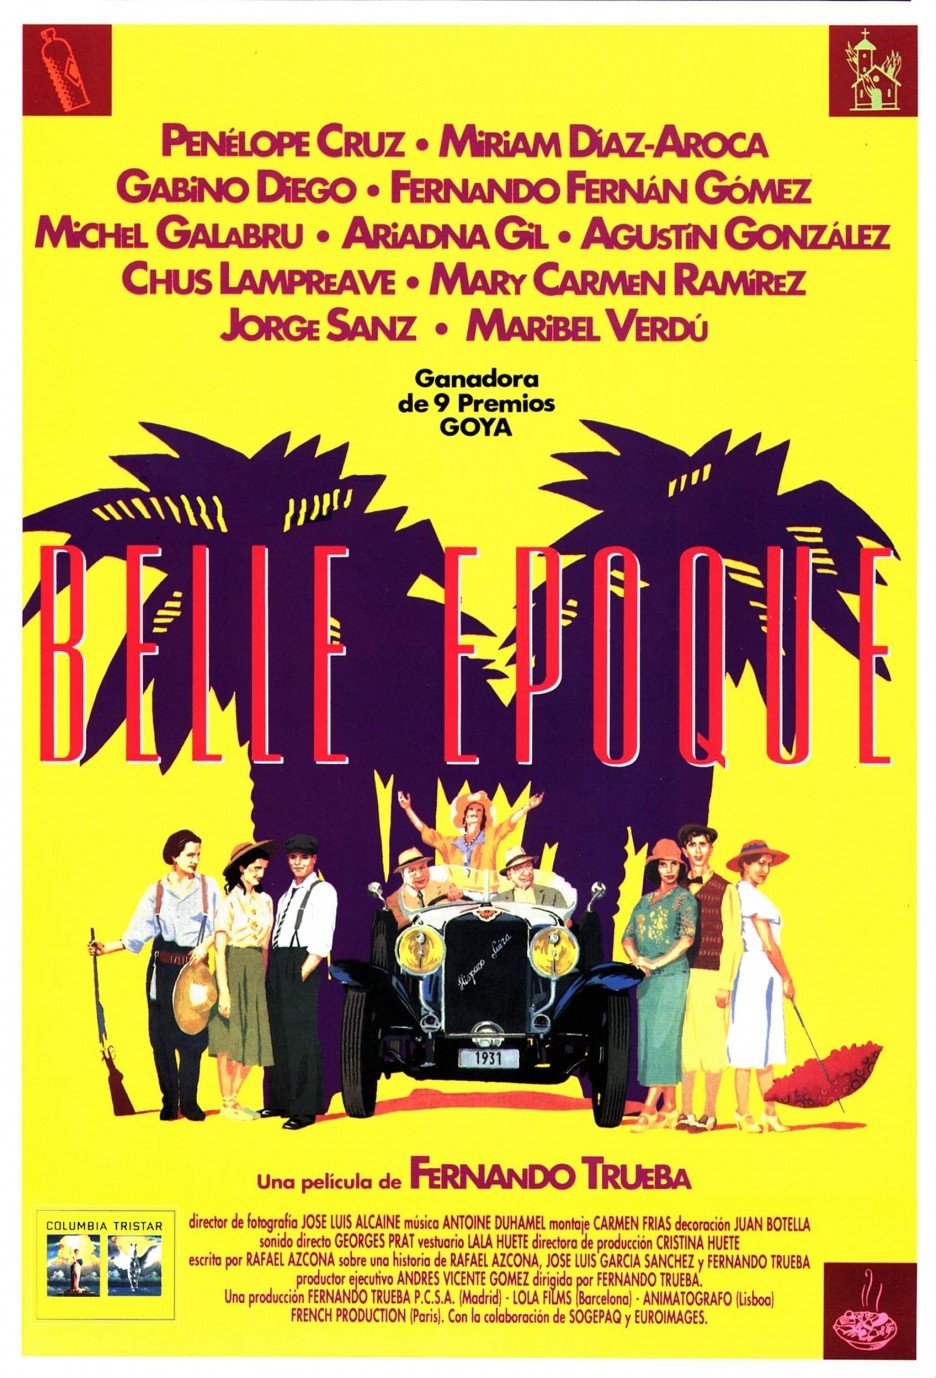 The poster's Belle Époque